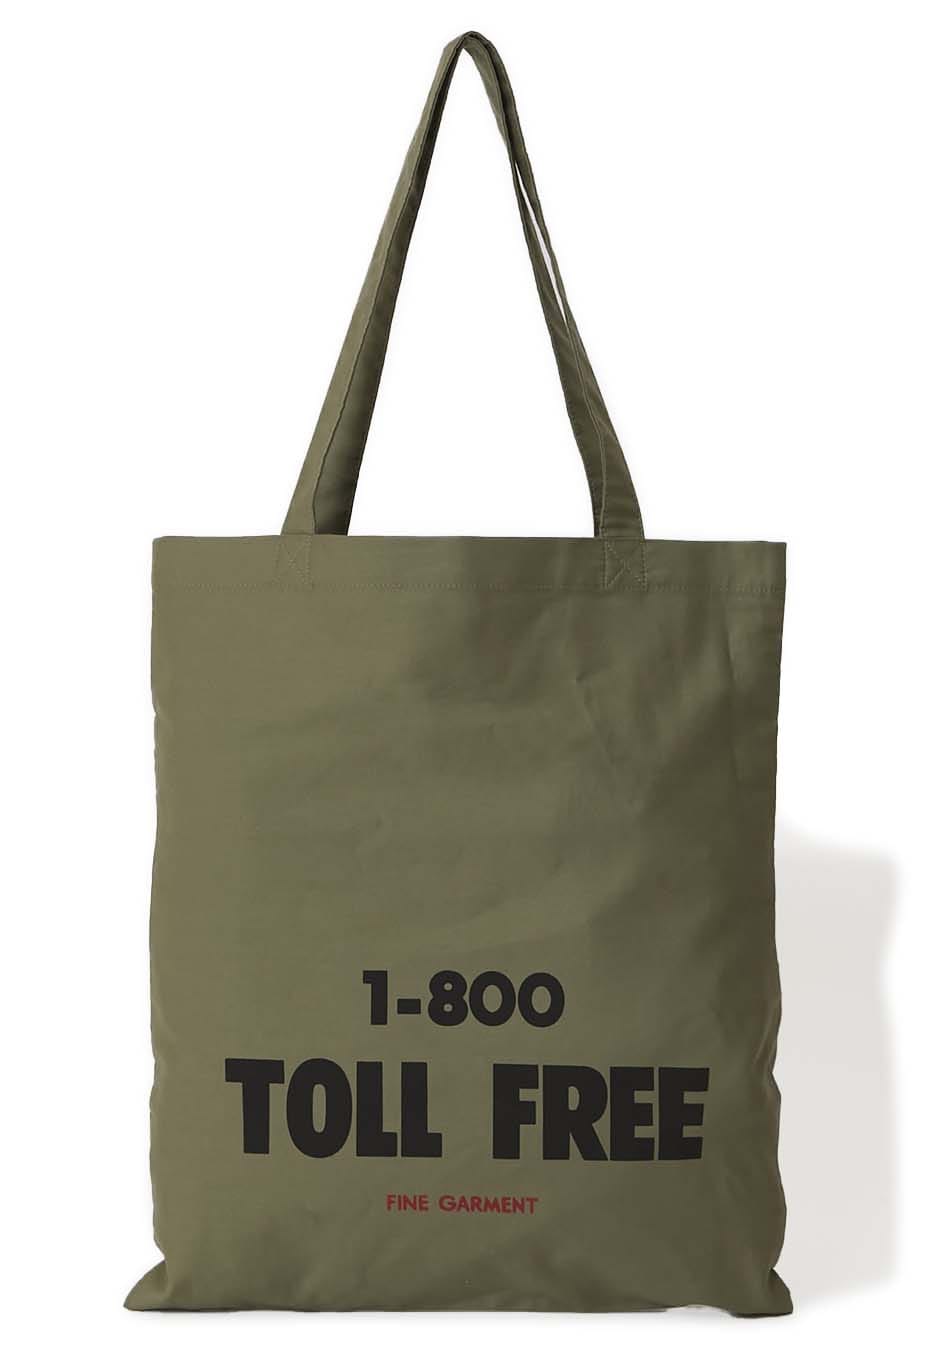 TOLL FREE original logo print tote bag